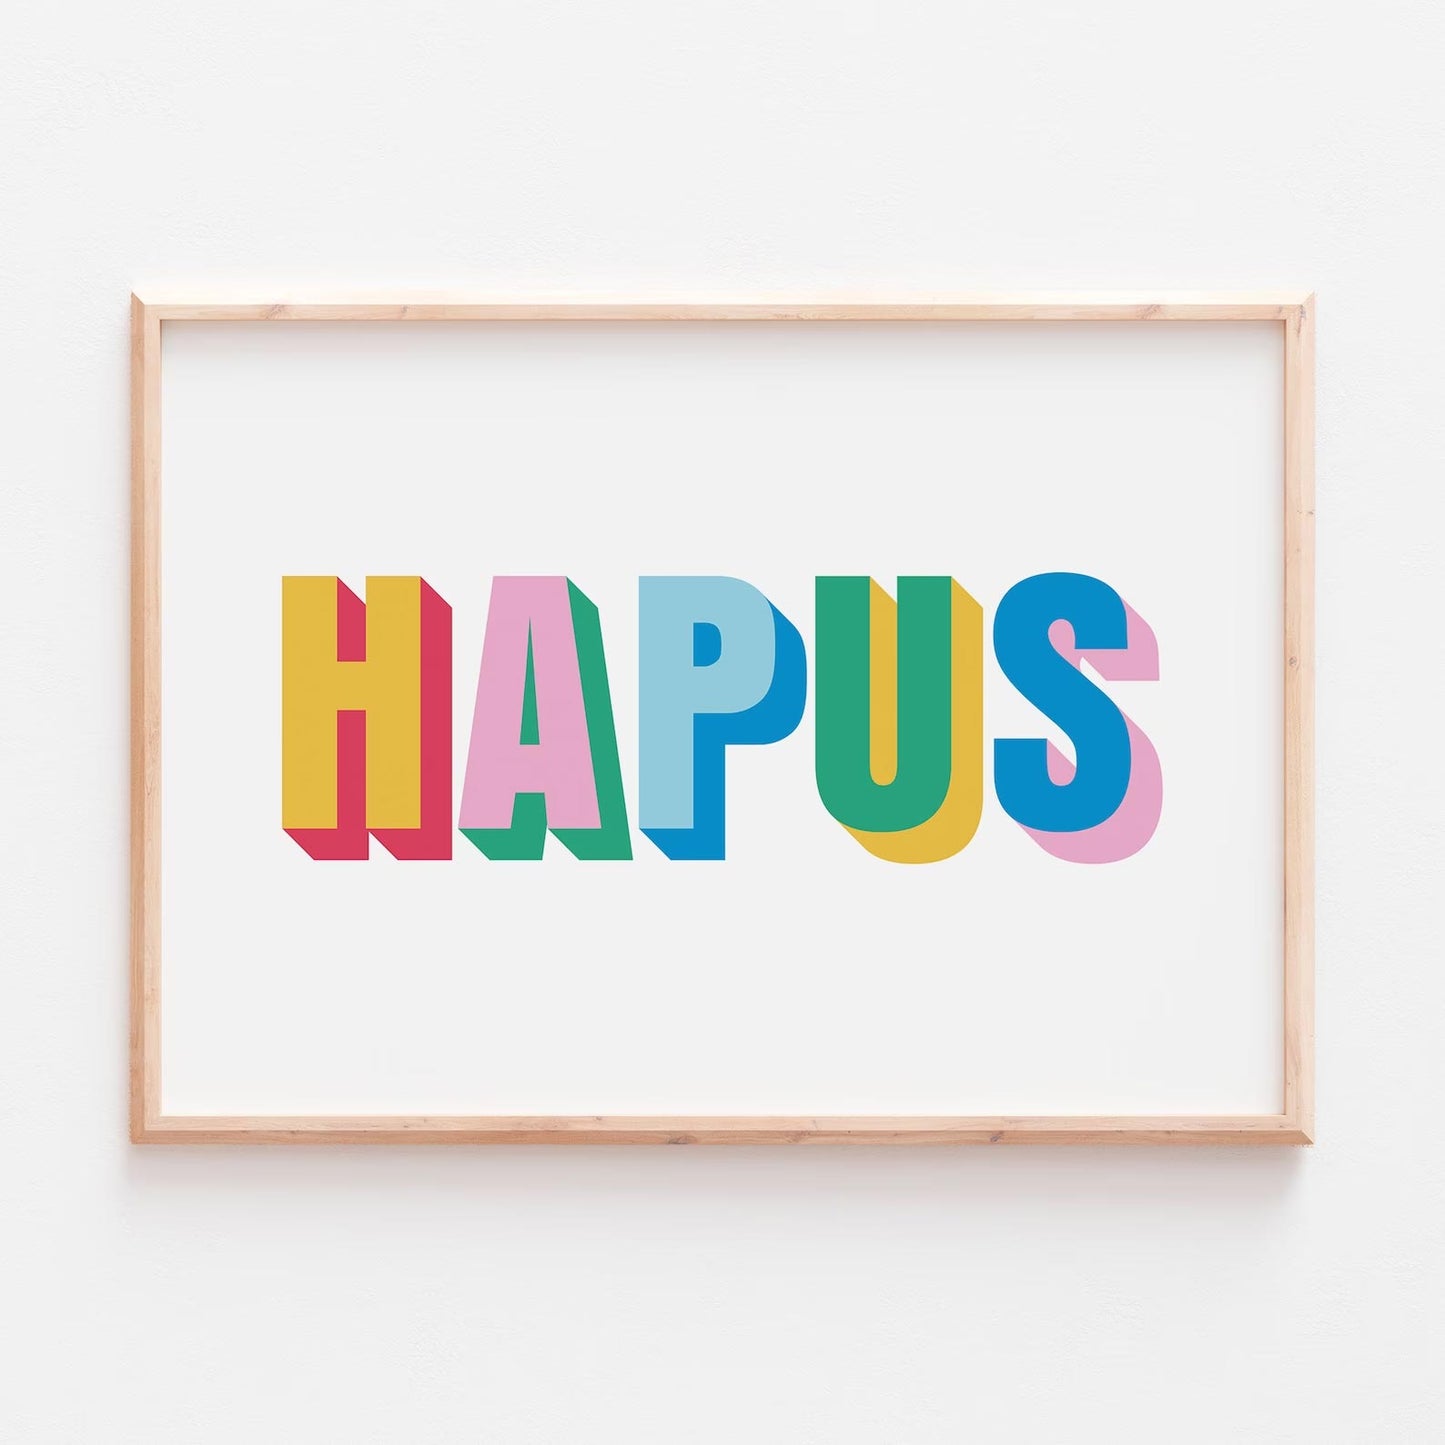 Print - Welsh Typographic - Hapus / Happy - A4